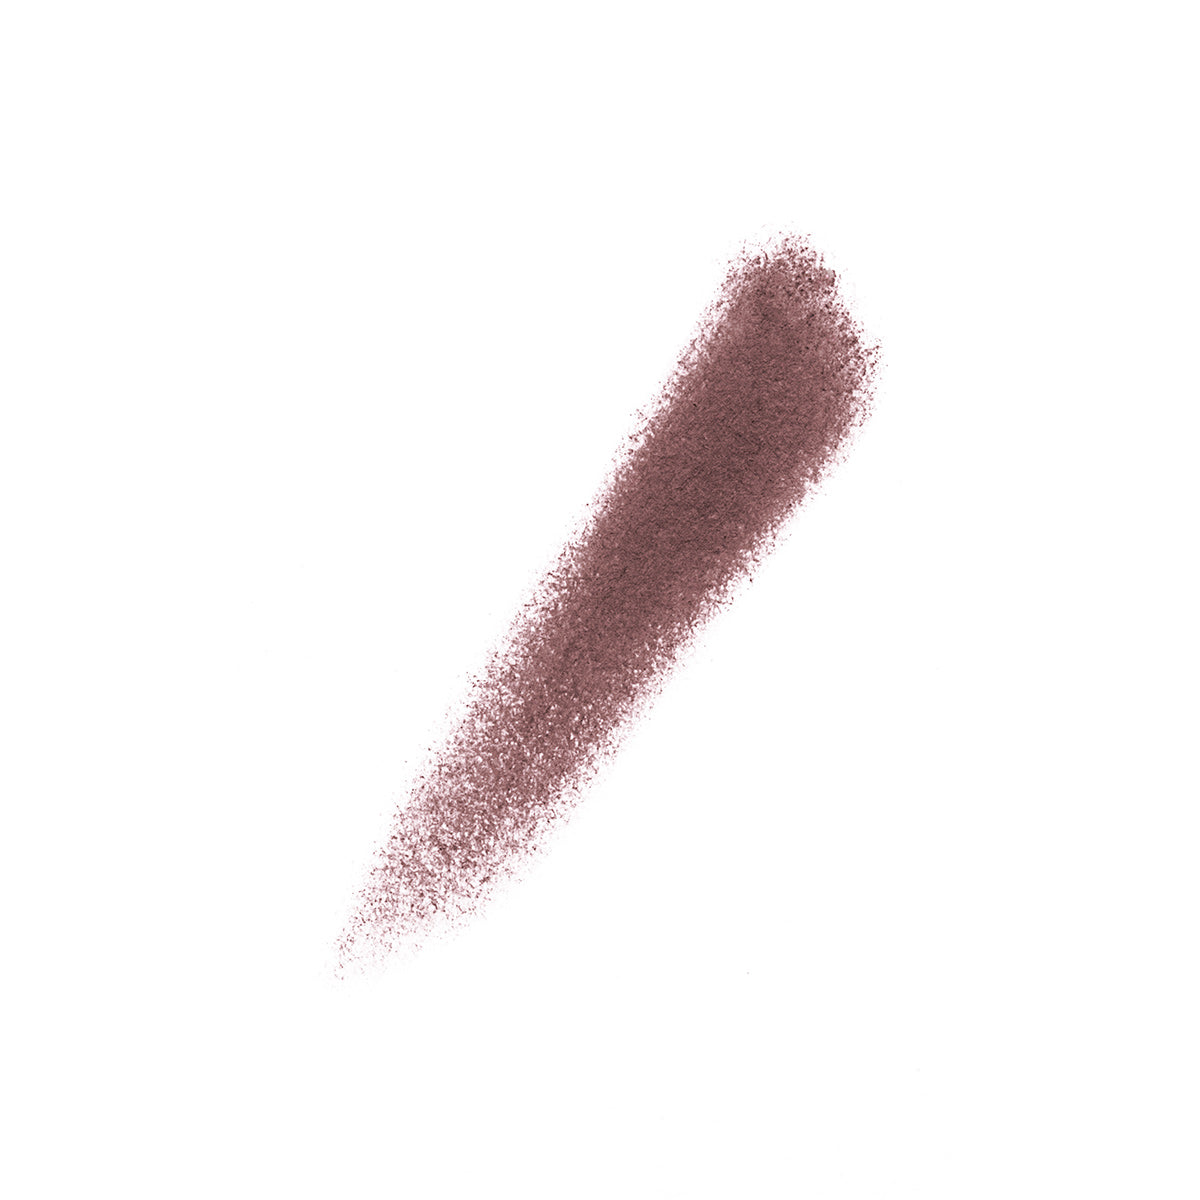 DIABOLIQUE - BROWN - swatch of deep brown creamy lipstick pencil